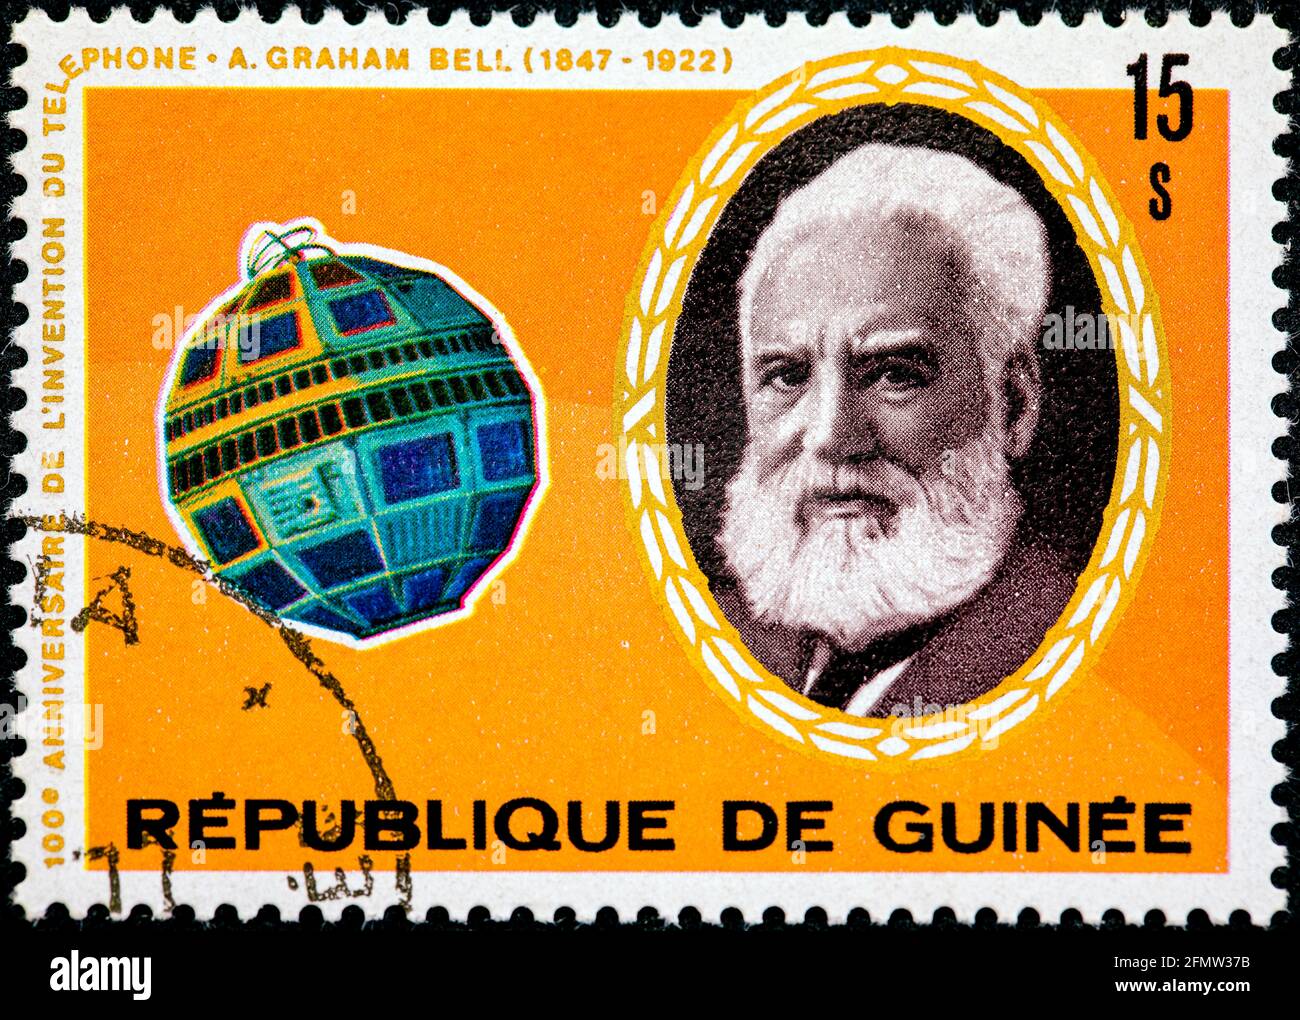 GUINÉE - VERS 1976 : un timbre imprimé en Guinée montre le portrait d'Alexander Graham Bell et du satellite Telstar, série, vers 1976 Banque D'Images